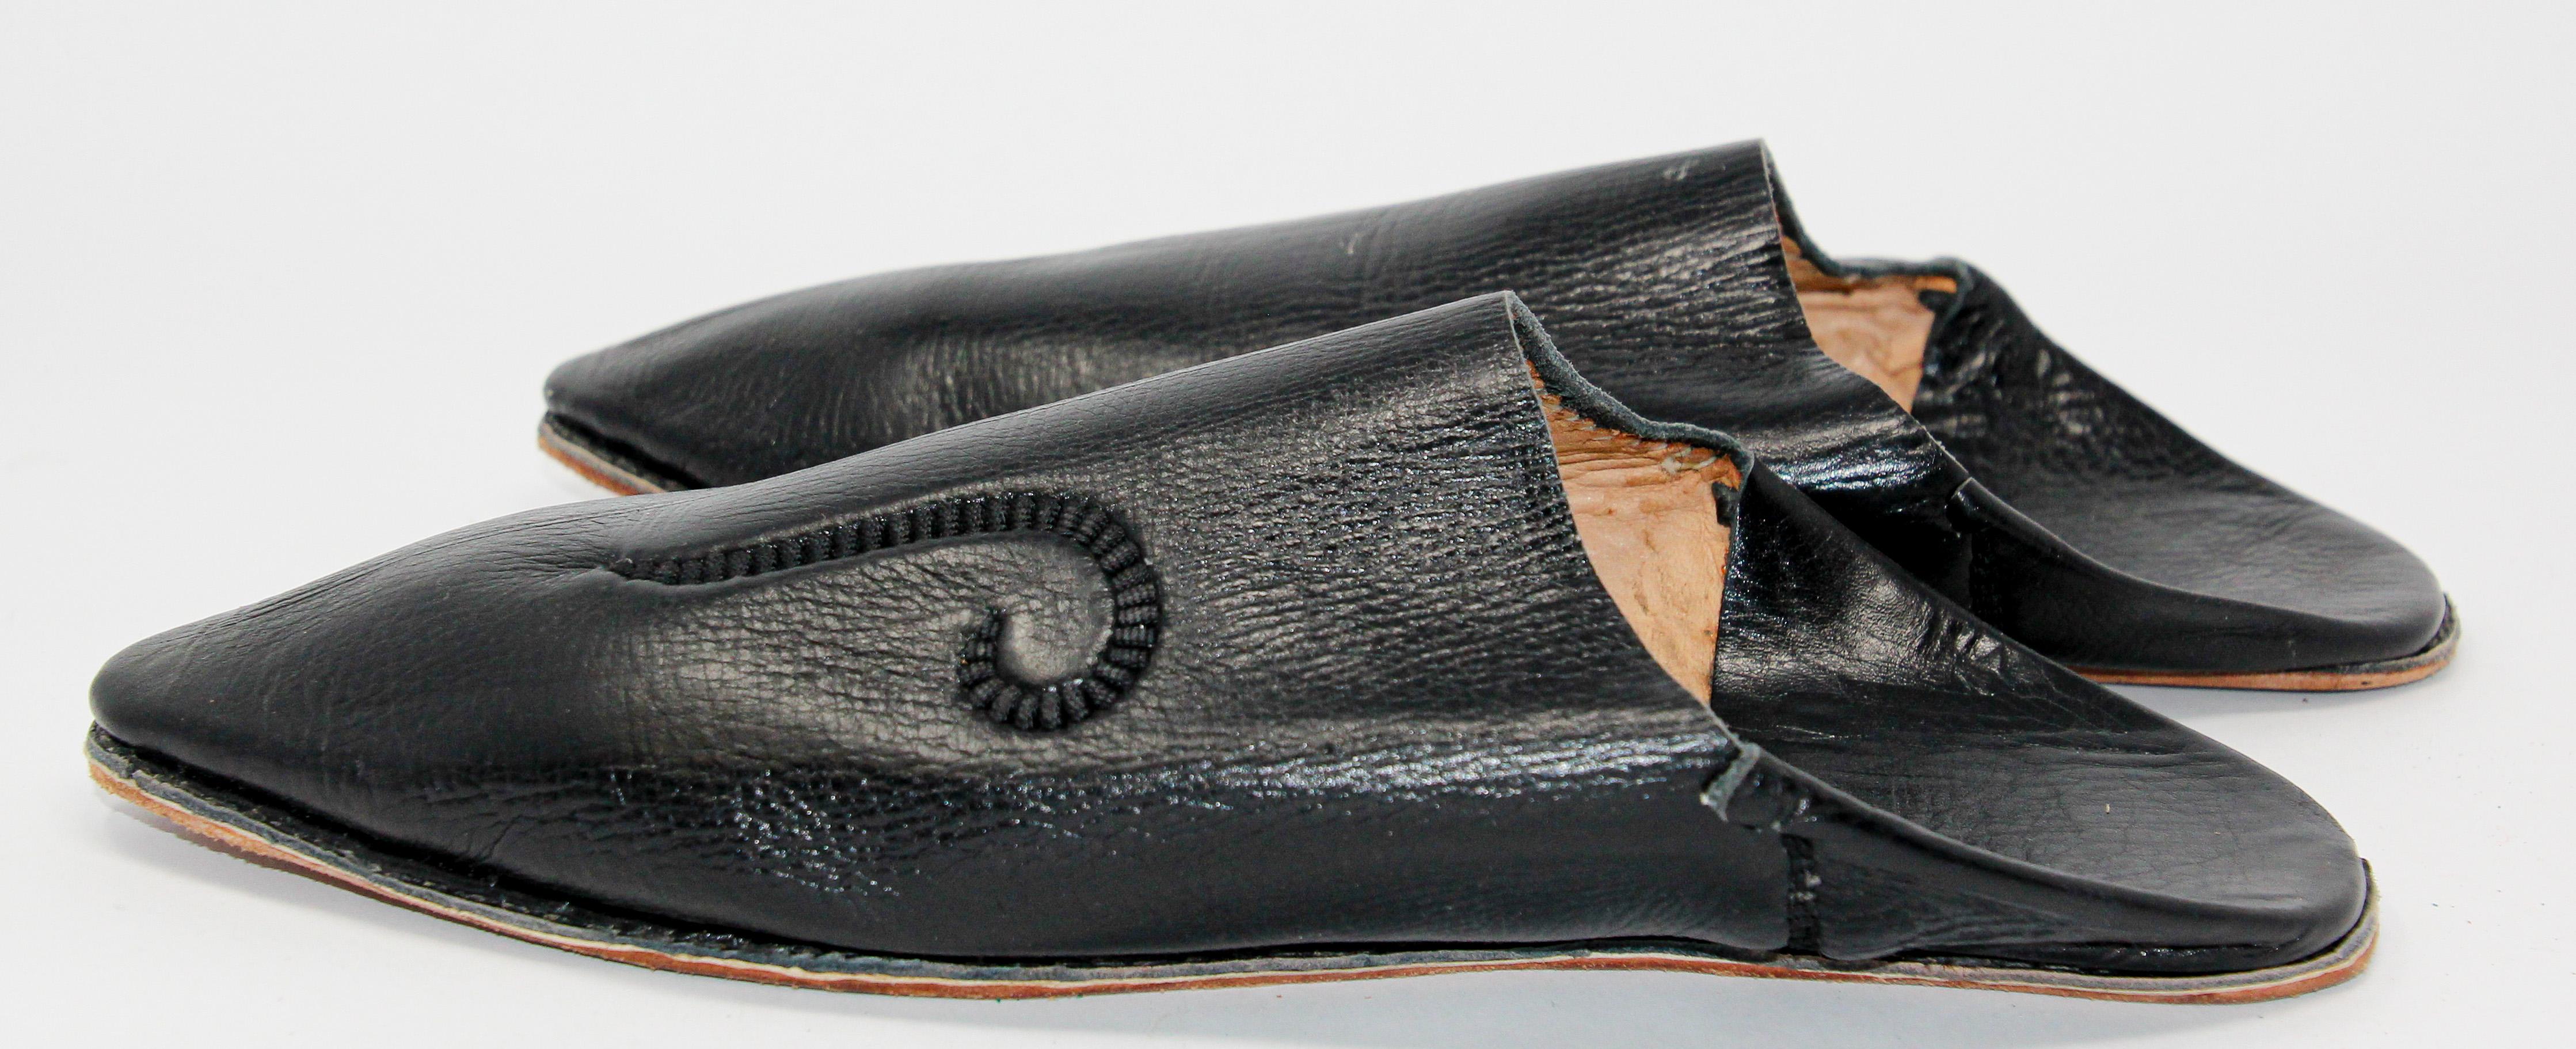 Die marokkanischen Lederslipper sind handgefertigt und die Innensohle ist aus weichem Leder.
Ethnische Schuhe aus schwarzem Leder Handgenähte Sohle und handgefertigt in Fez Marokko.
Sie werden die marokkanischen Babouches nicht mehr von den Füßen